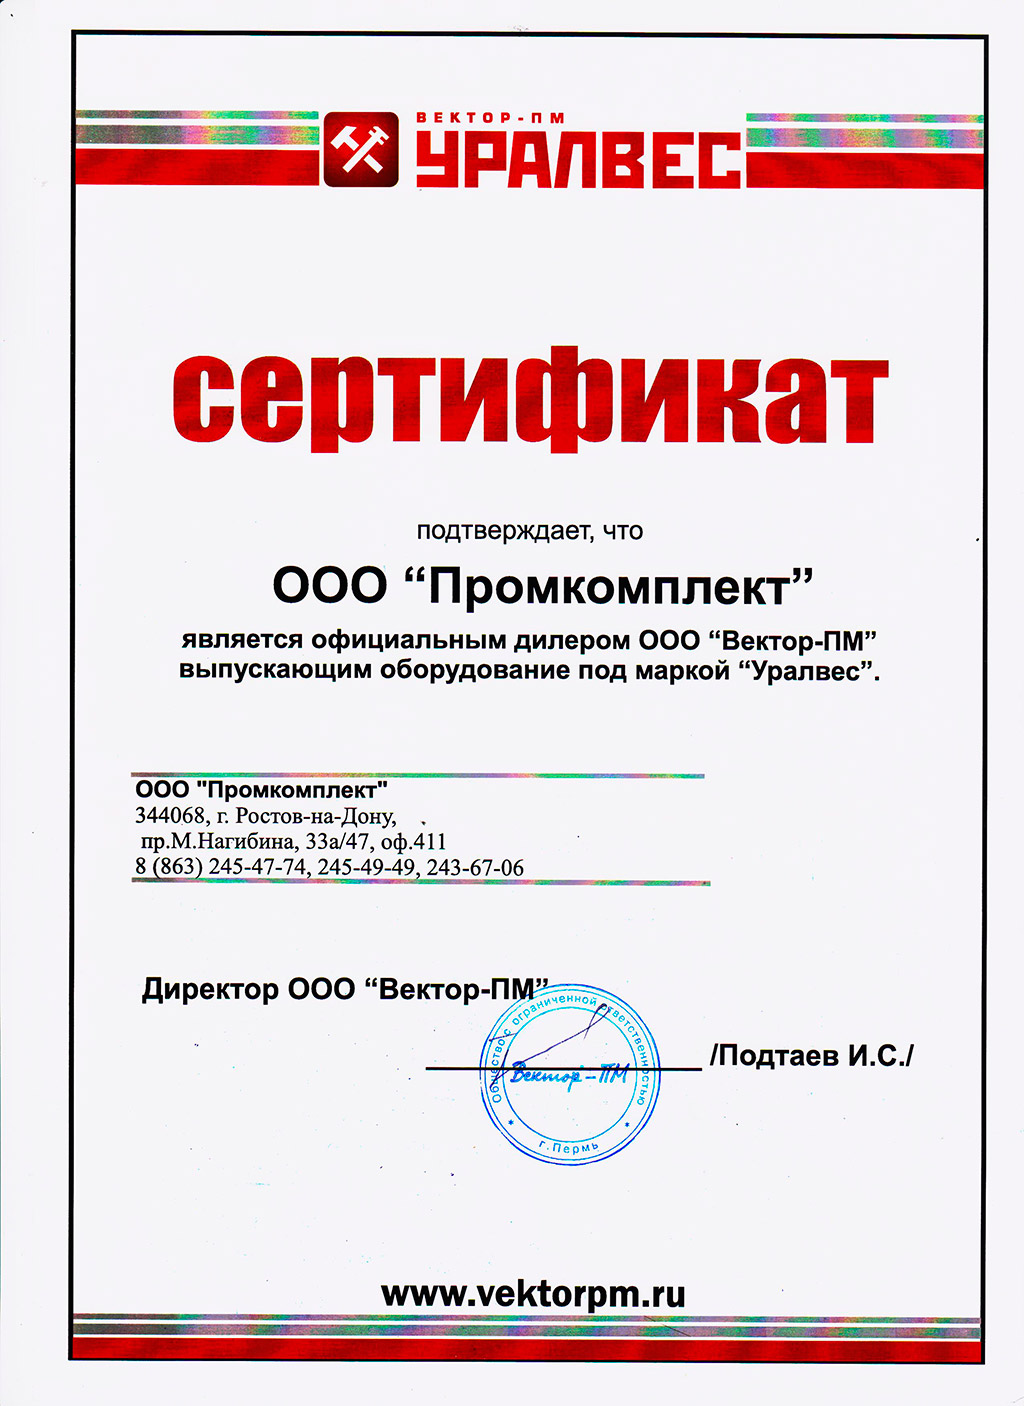 Сертификаты дилера